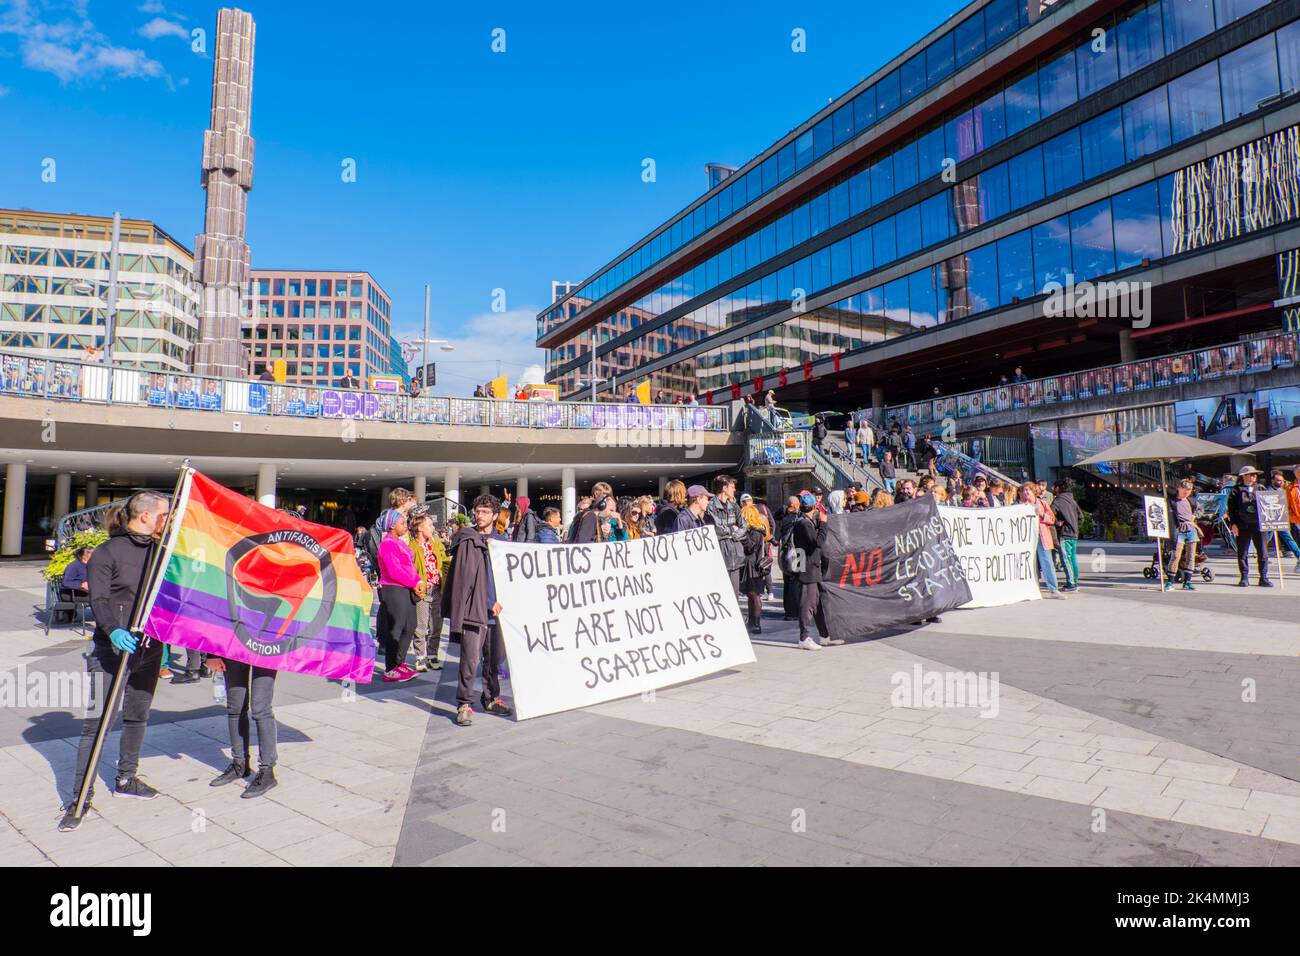 Demonstration, Sergels torg, Norrmalm, Stockholm, Sweden Stock Photo